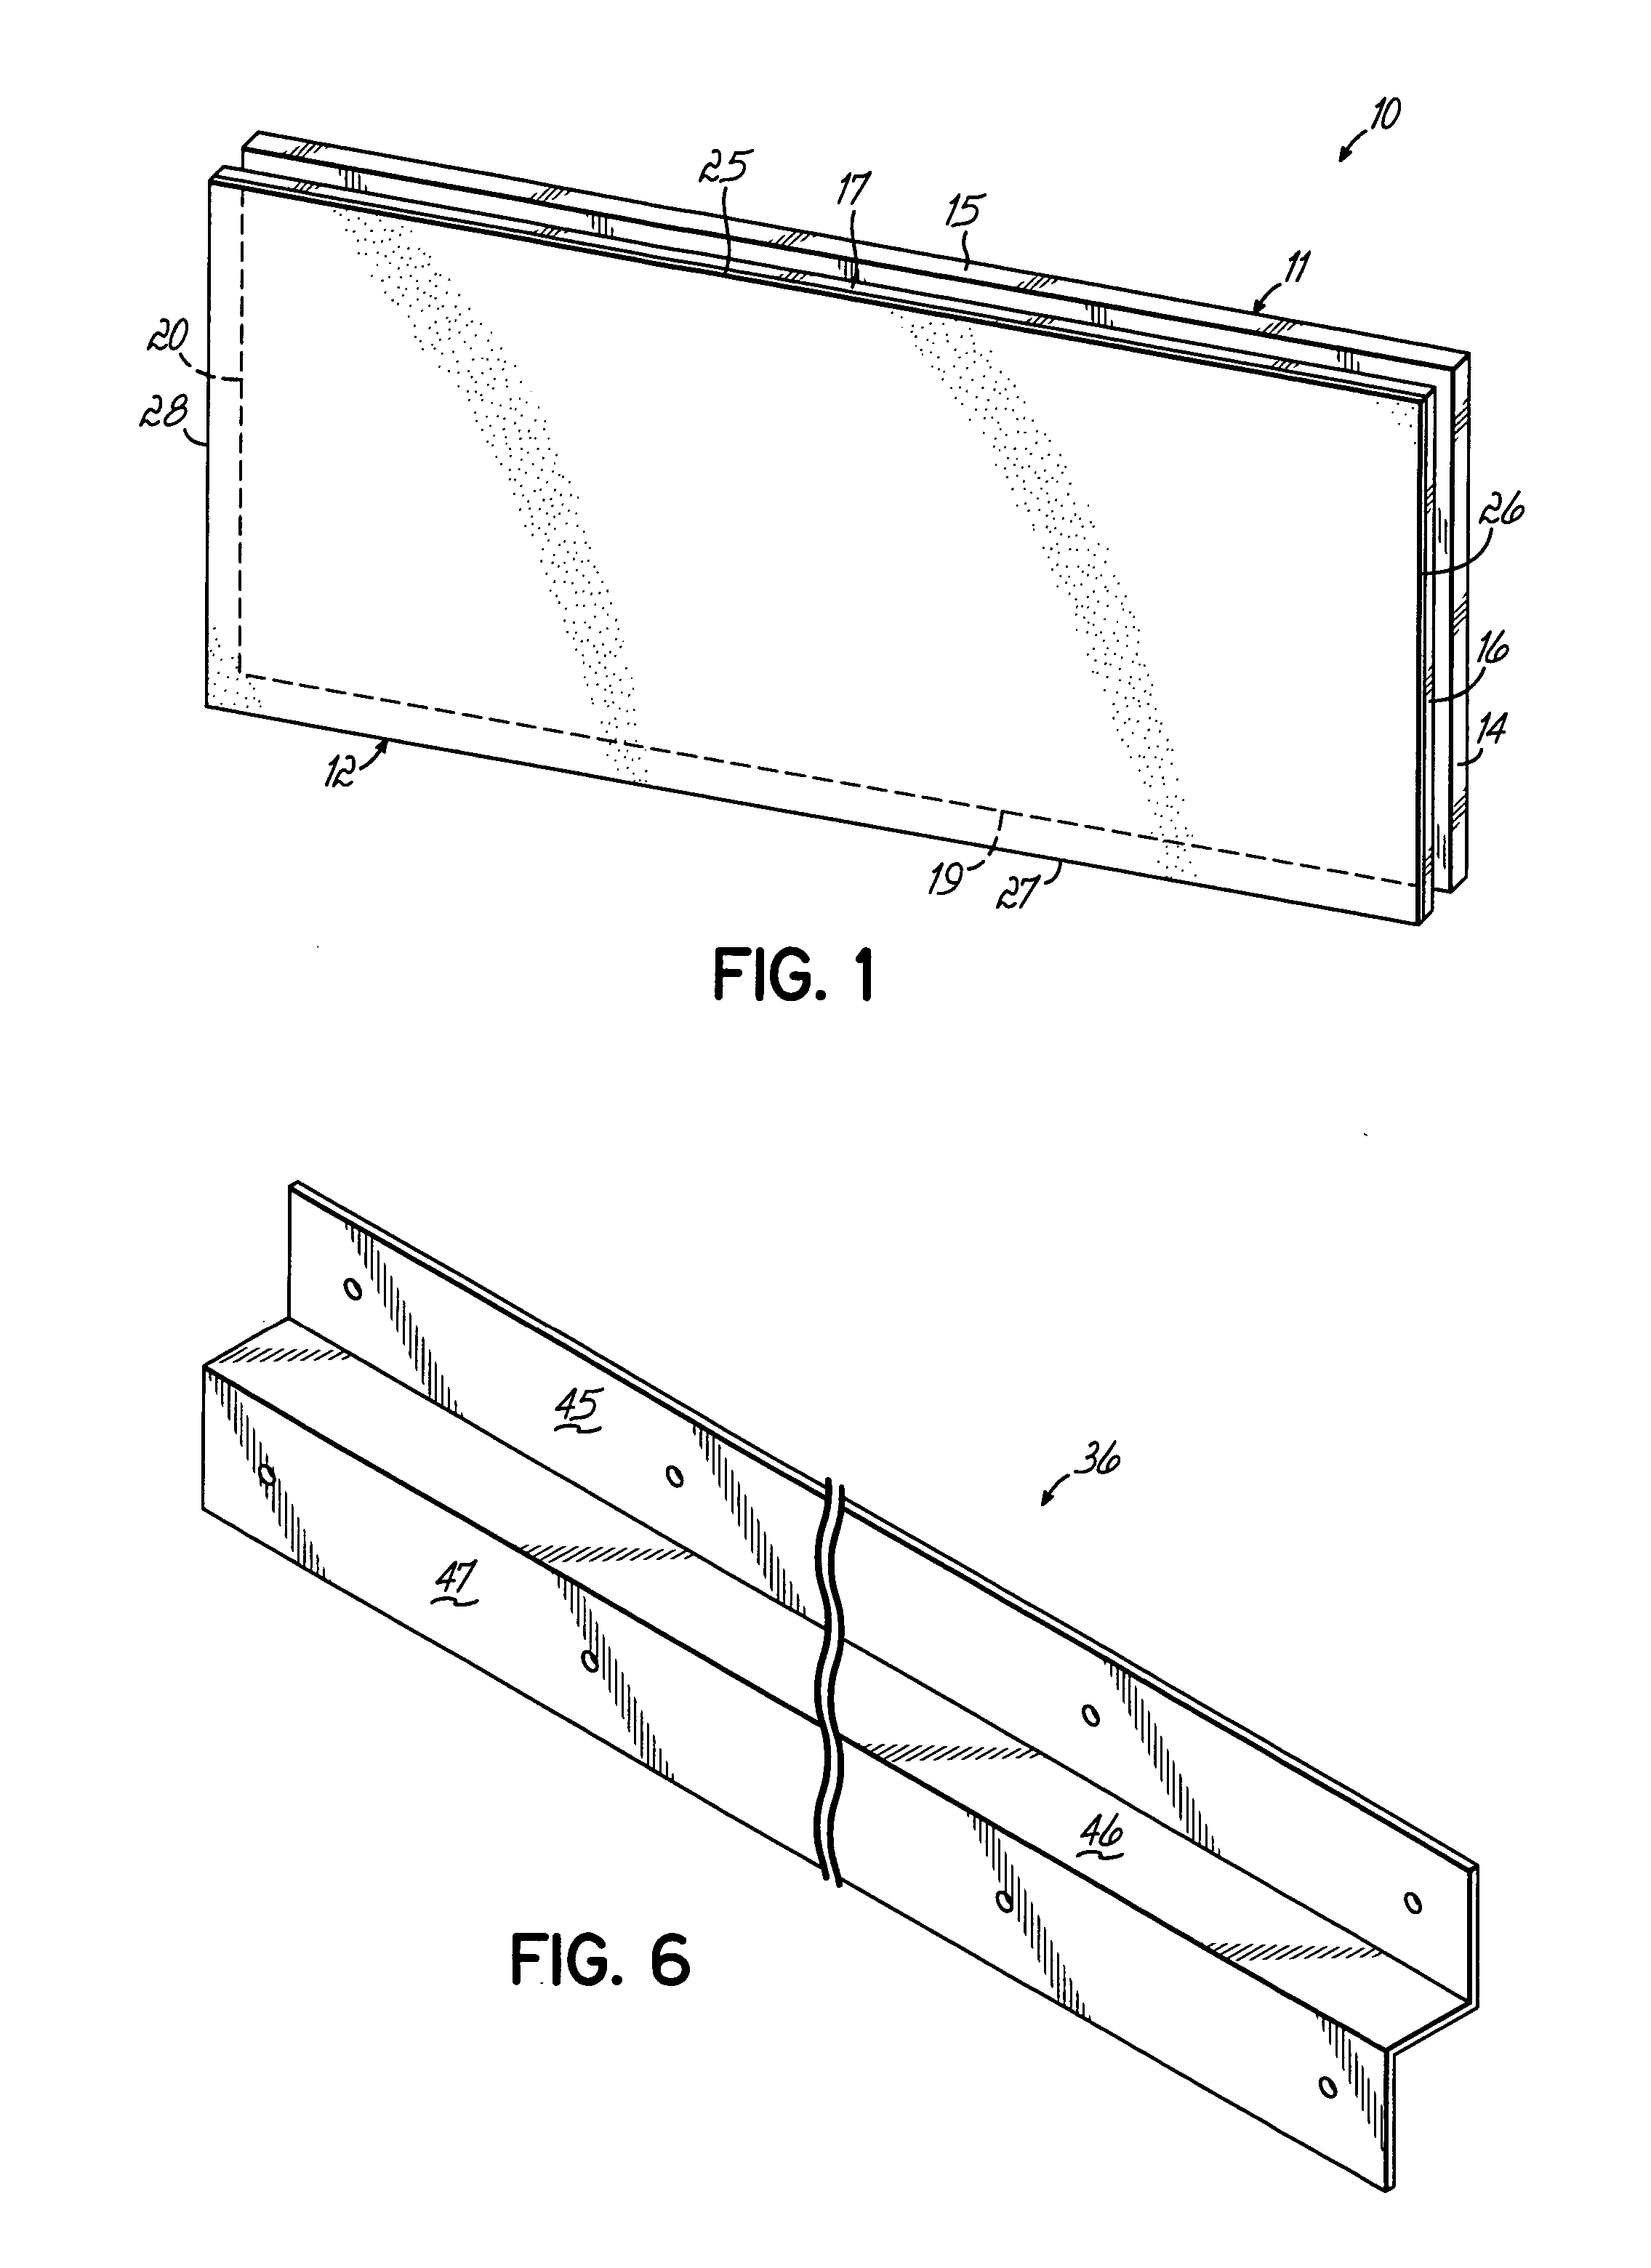 Insulated sheathing panels